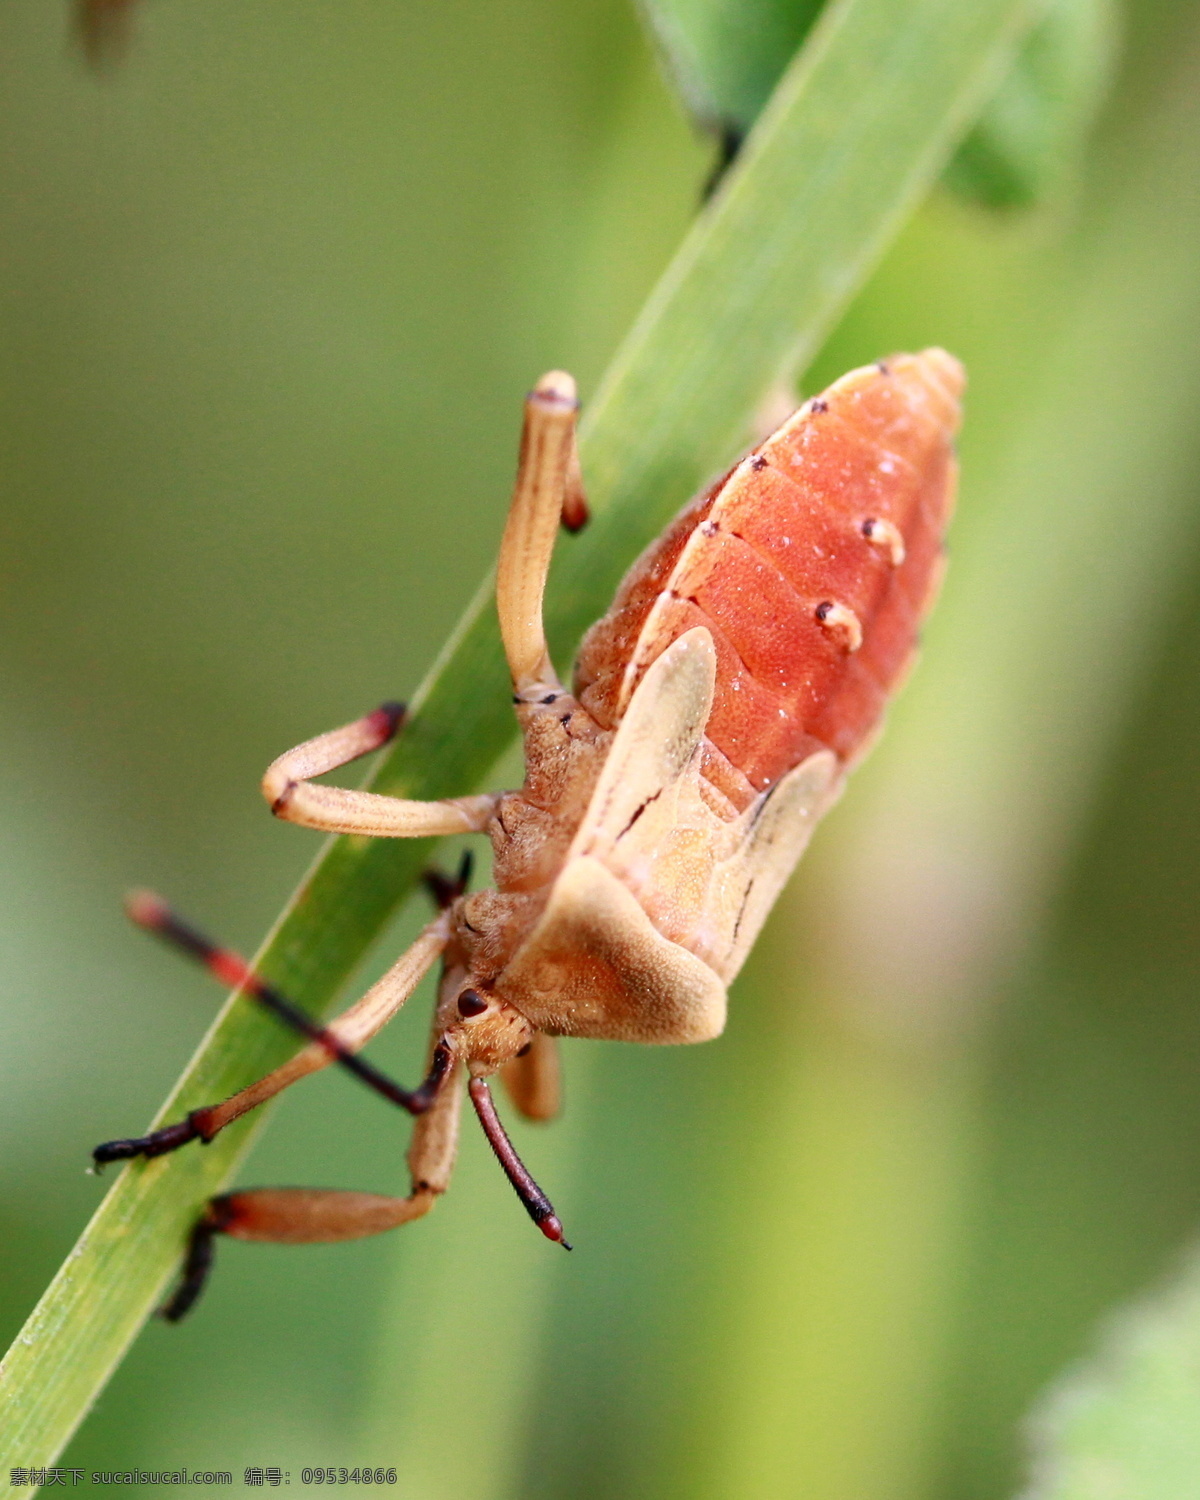 昆虫 虫子 红色虫子 绿叶 自然 爬虫 昆虫摄影图片 生物世界